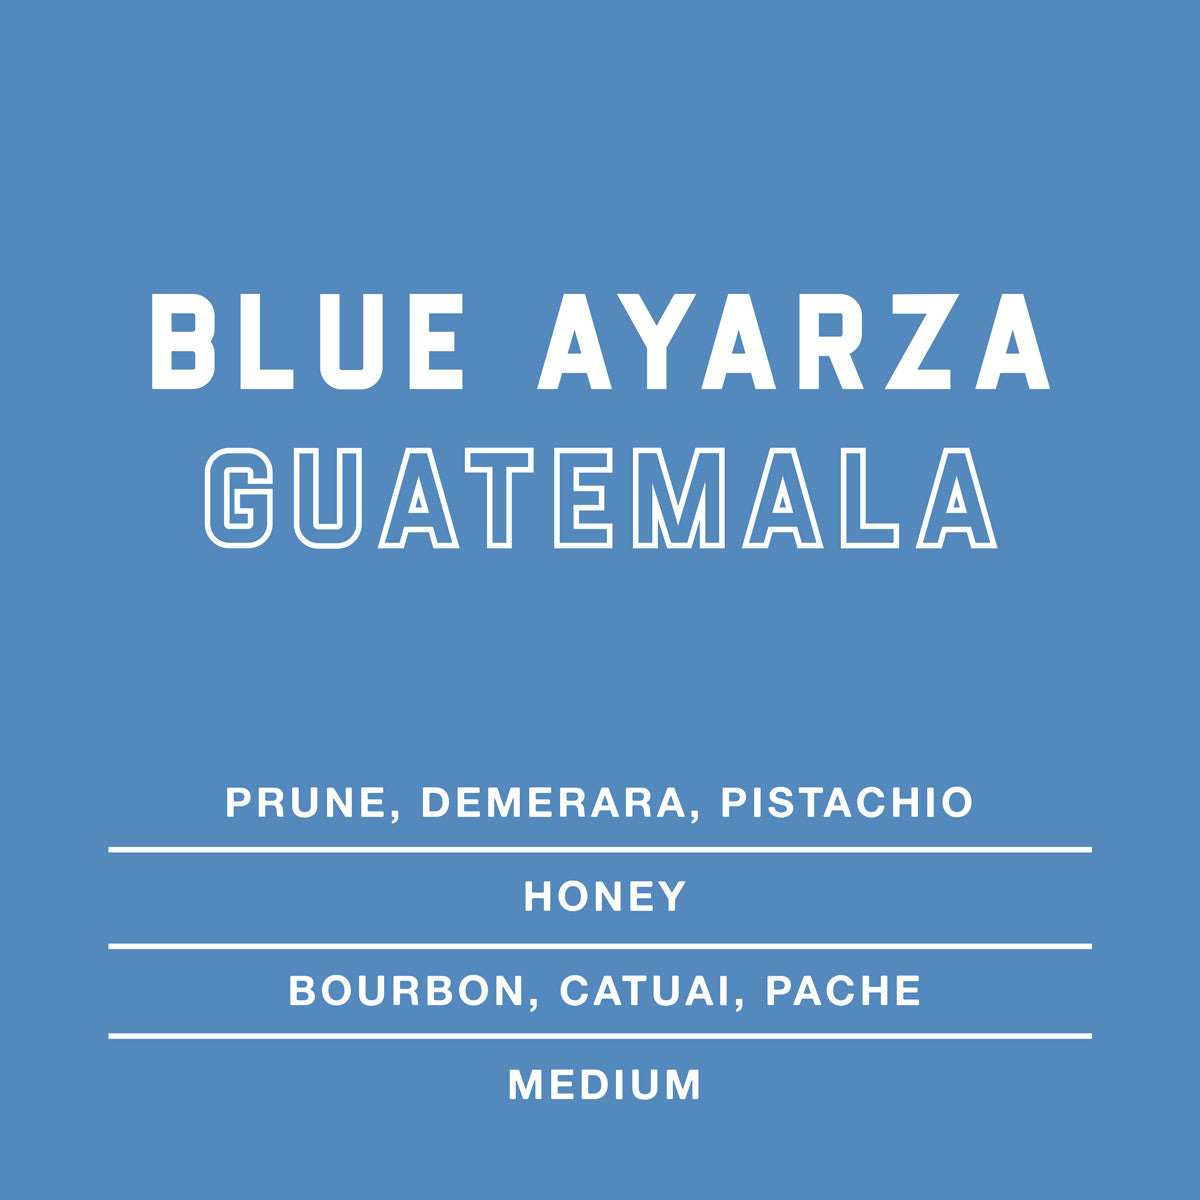 Blue-Ayarza-Guatemala-Single-Origin-Coffee